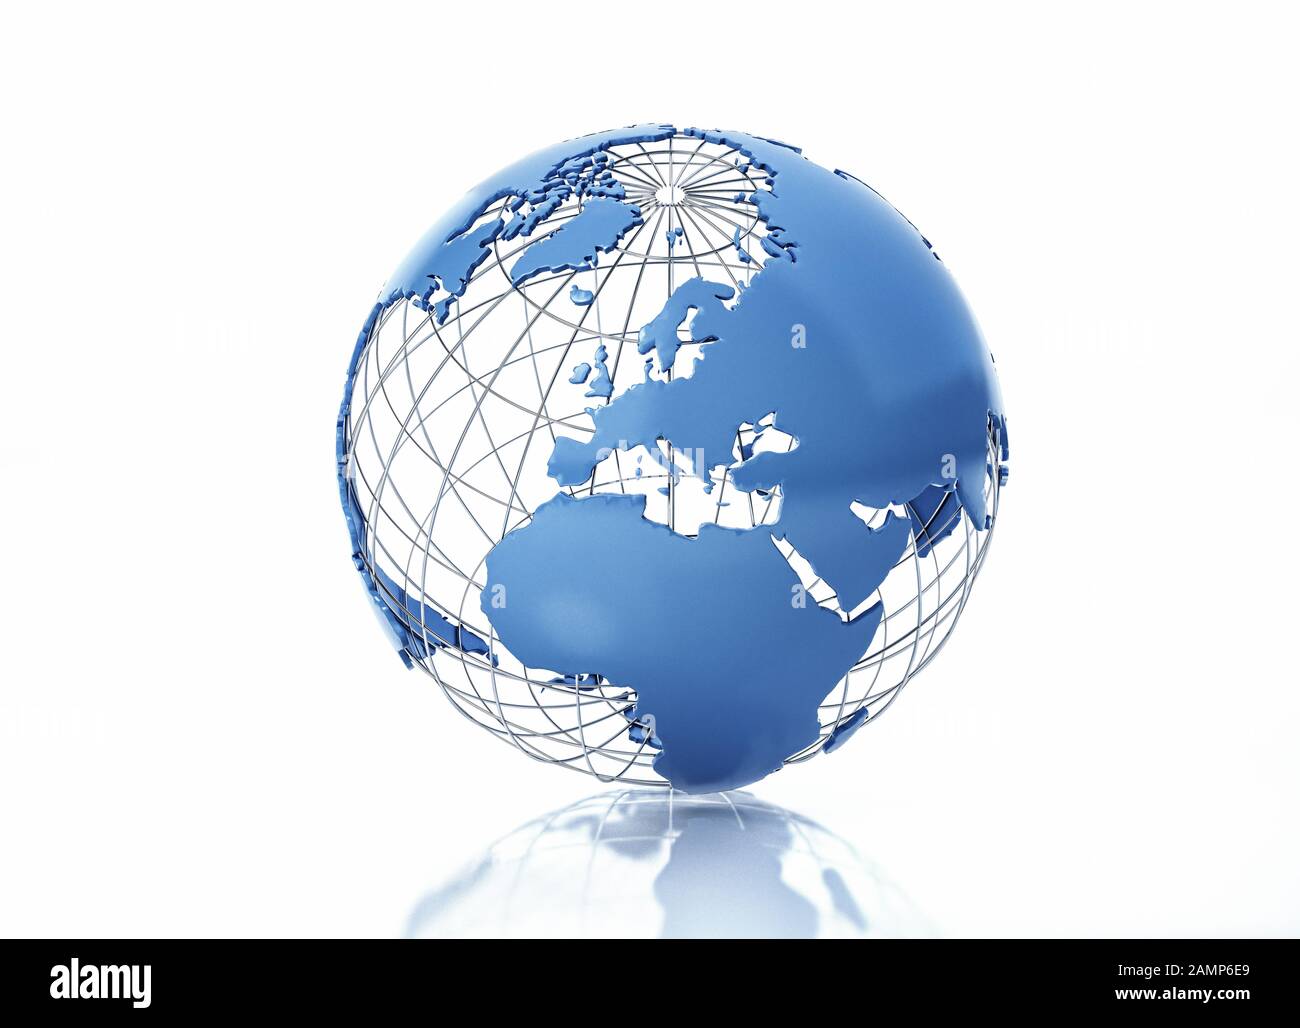 Globe terrestre stylisé avec grille métallique. Vue sur l'Europe. Sur fond blanc avec une certaine réflexion sur la surface. Banque D'Images